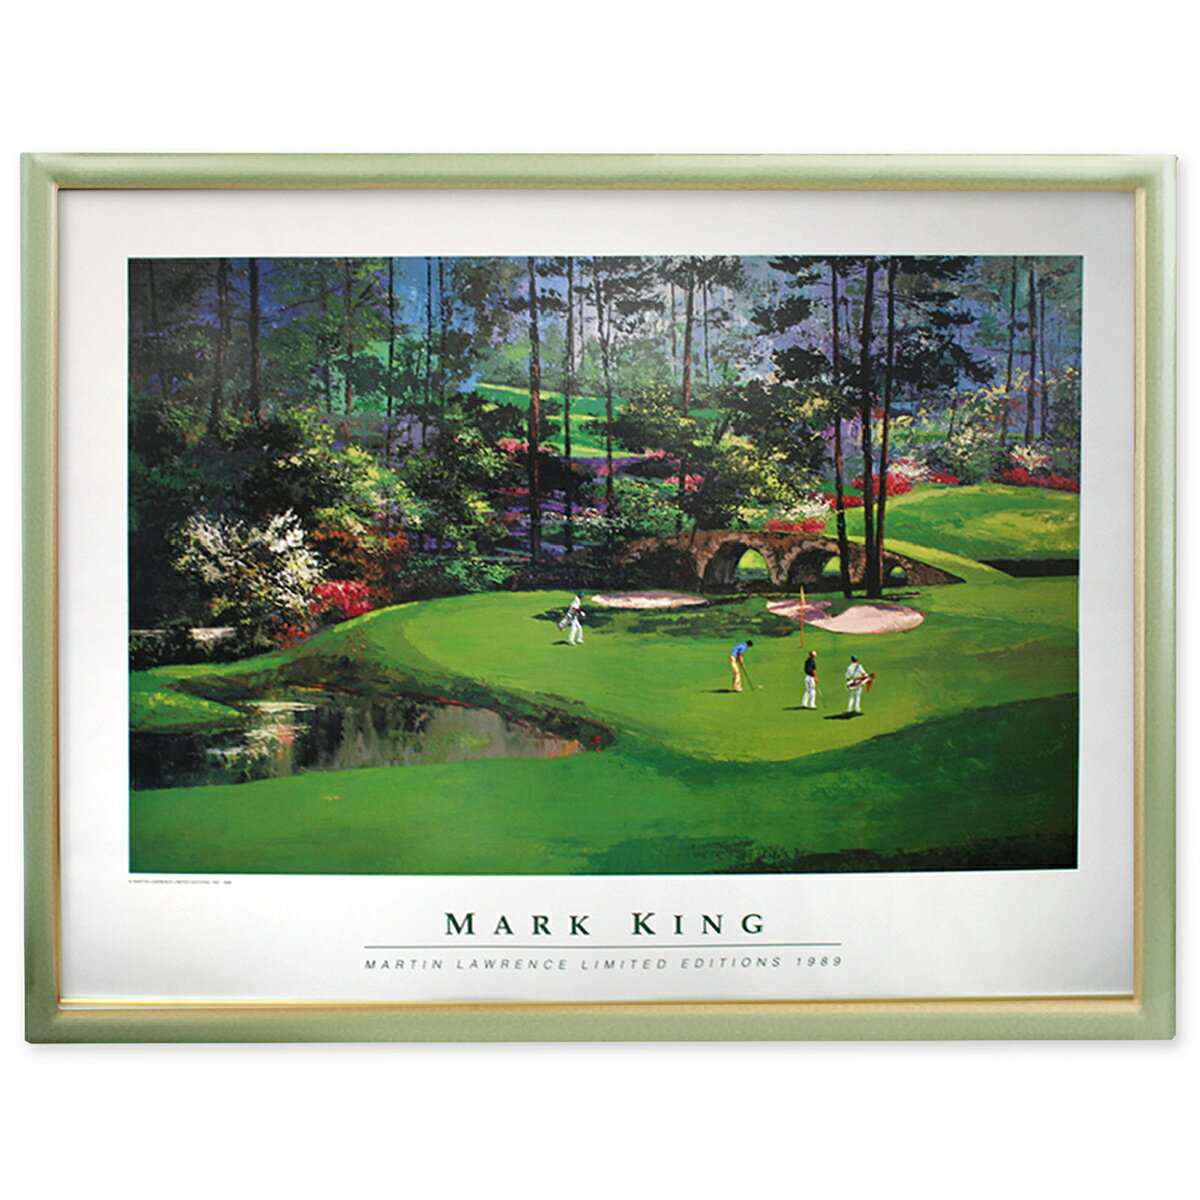 マークキング AUGUSTA 11 CP MK1 マーク キング CP MK2 沿岸のゴルフ場 ゴルフ場の絵 ゴルフ ゴルフの絵 絵画 アートポスター ヴィンテージポスター 送料無料